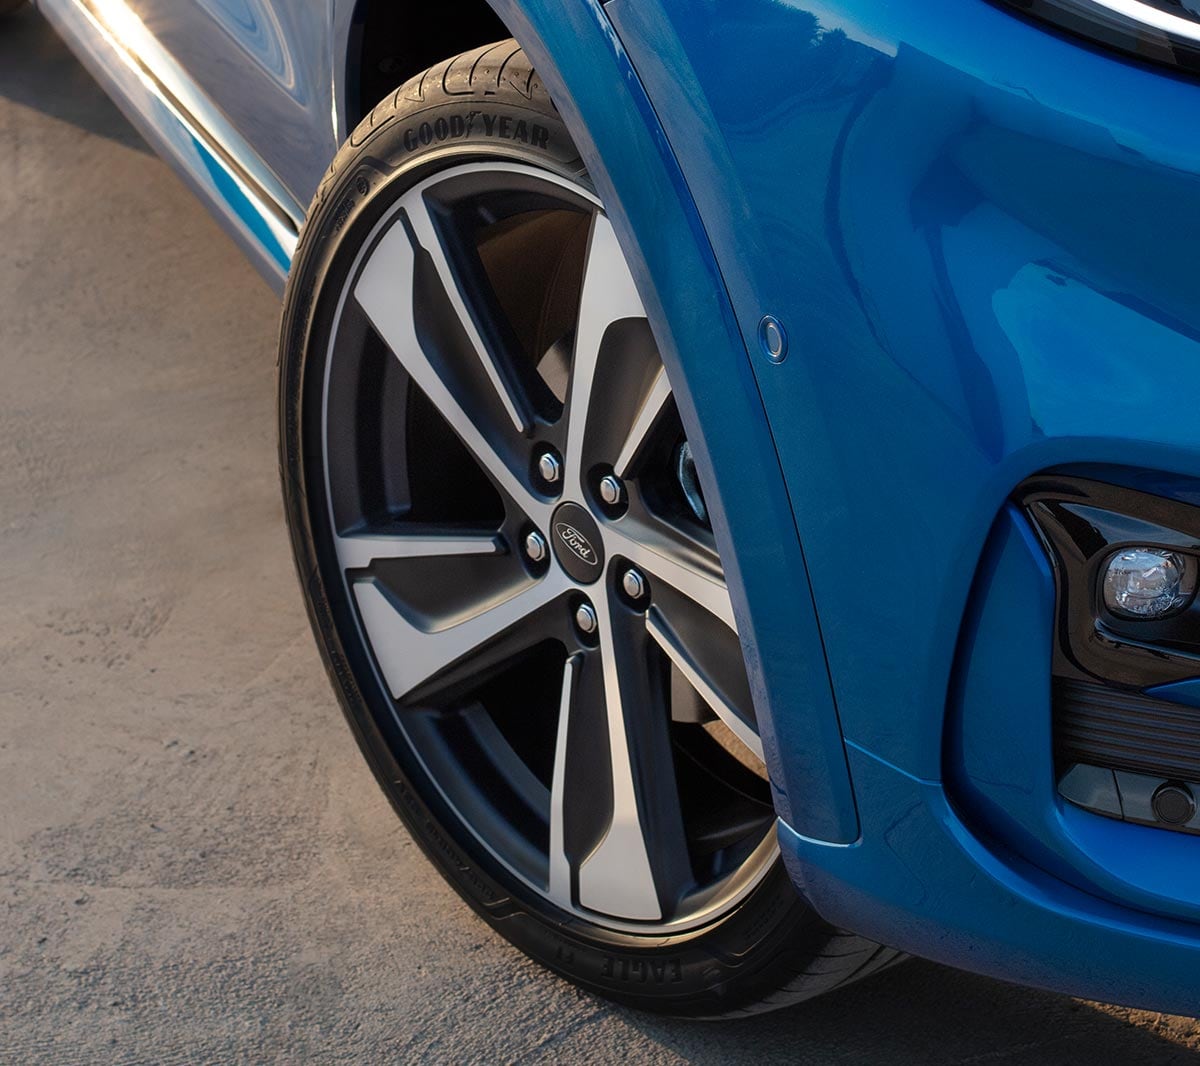 Ford Puma couleur bleue, vue détaillée de la roue.